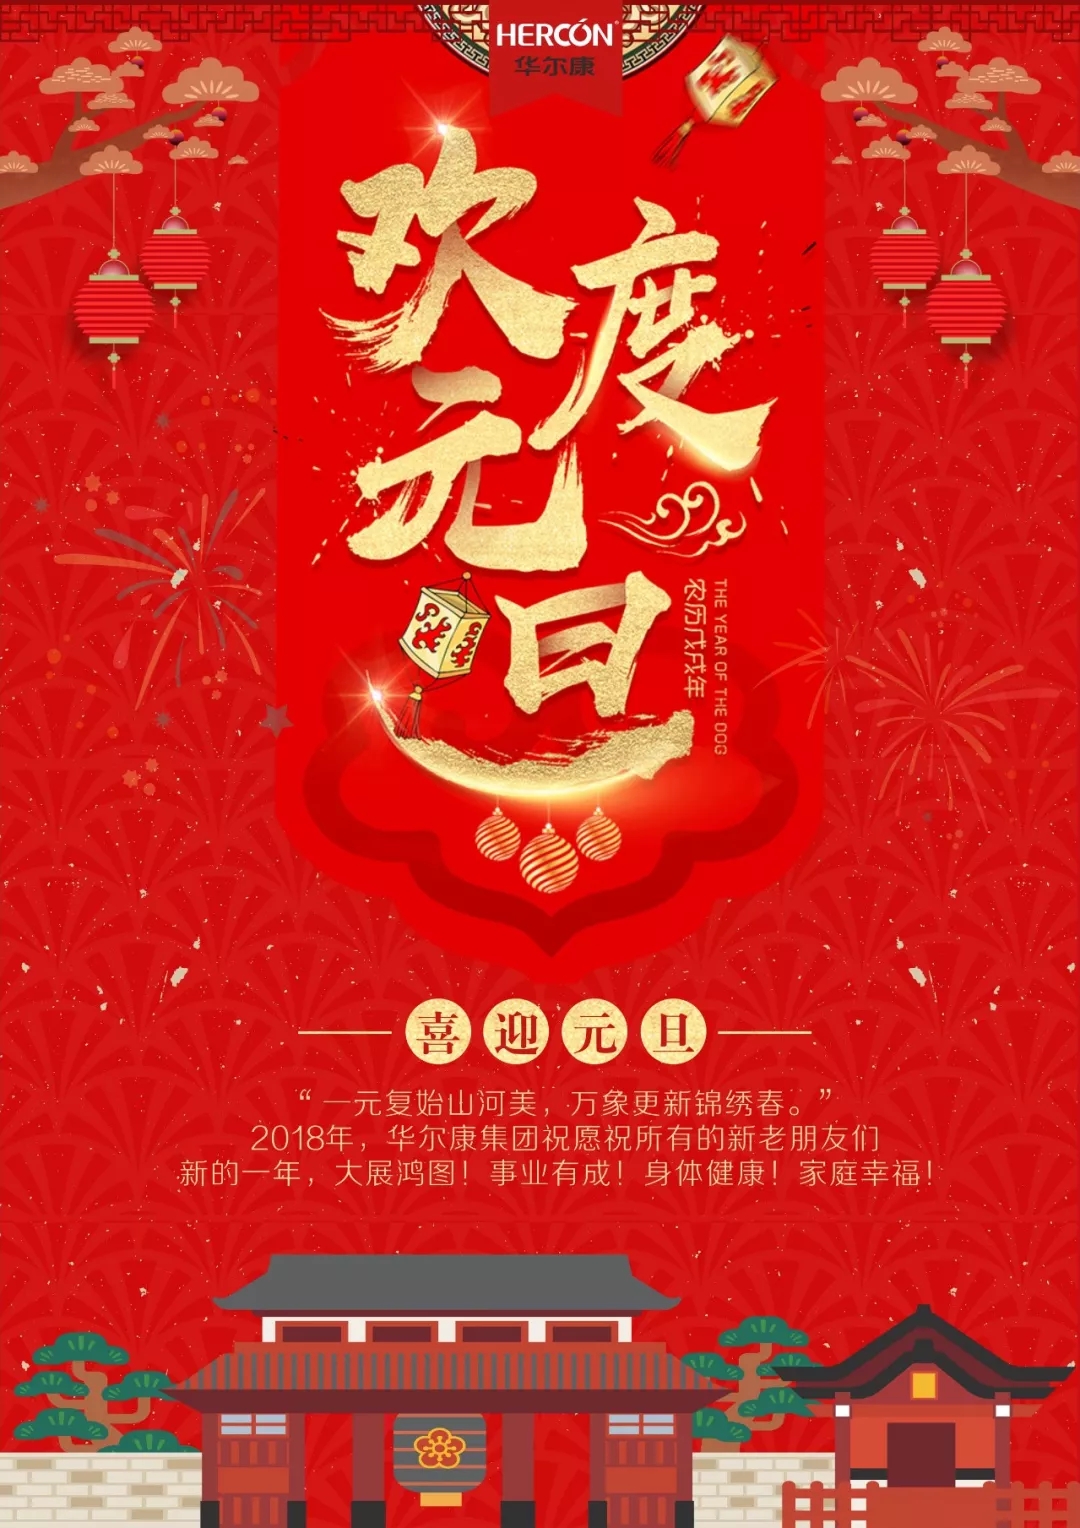 【新年致辞】华尔康总经理朱建华及各部代表祝大家狗年大吉!